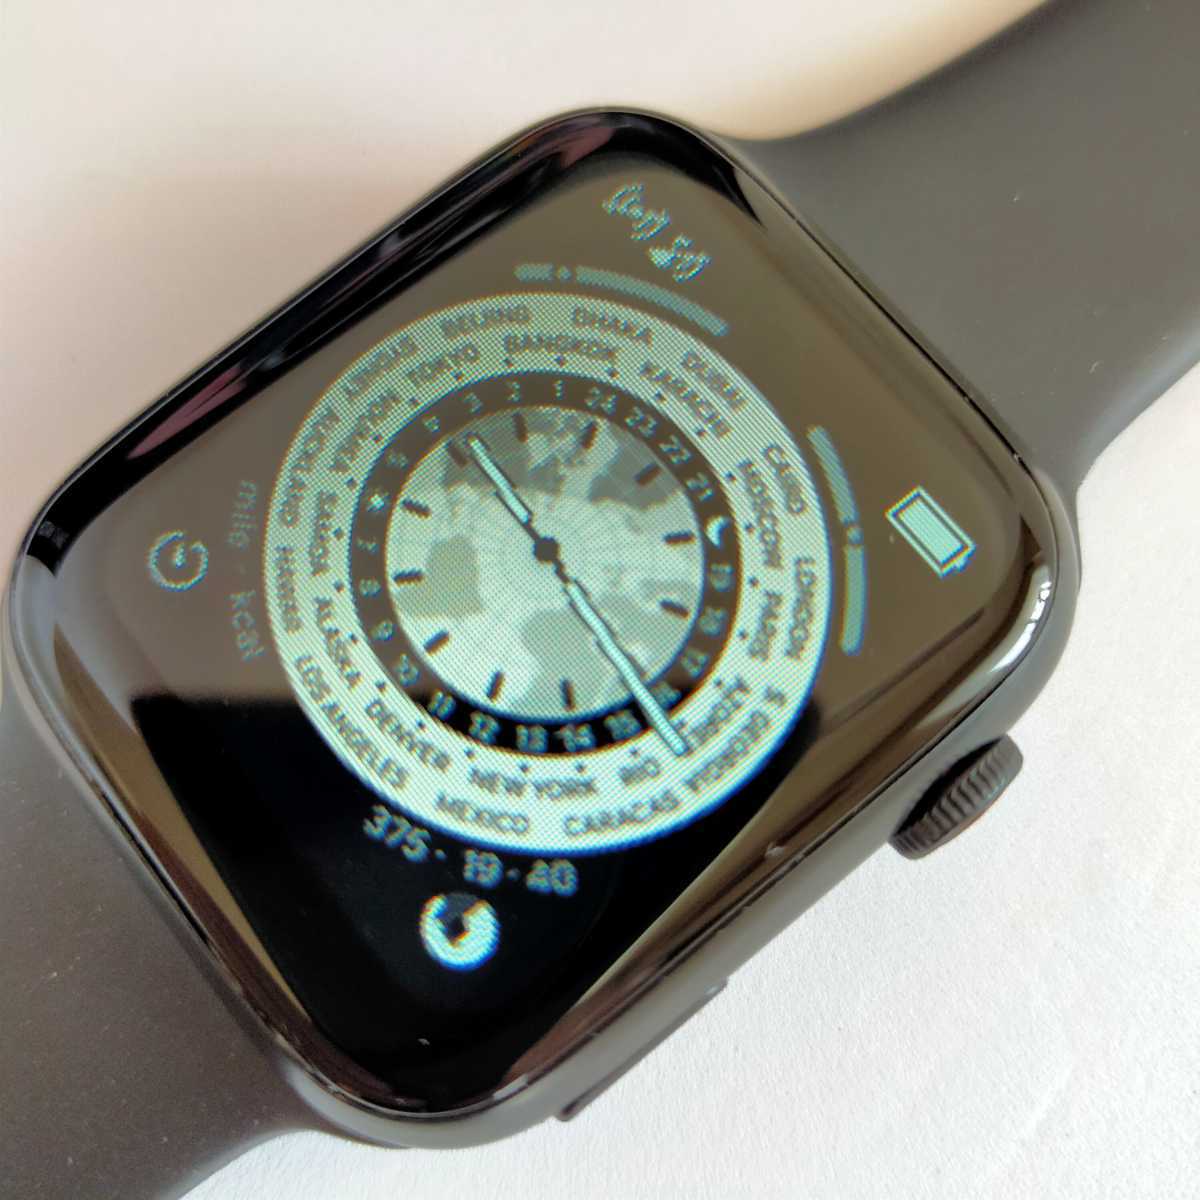  новейший [i7 Pro max] смарт-часы новый товар многофункциональный здоровье спорт водонепроницаемый . средний кислород android кровяное давление сердце .iphone Apple шагомер сон 